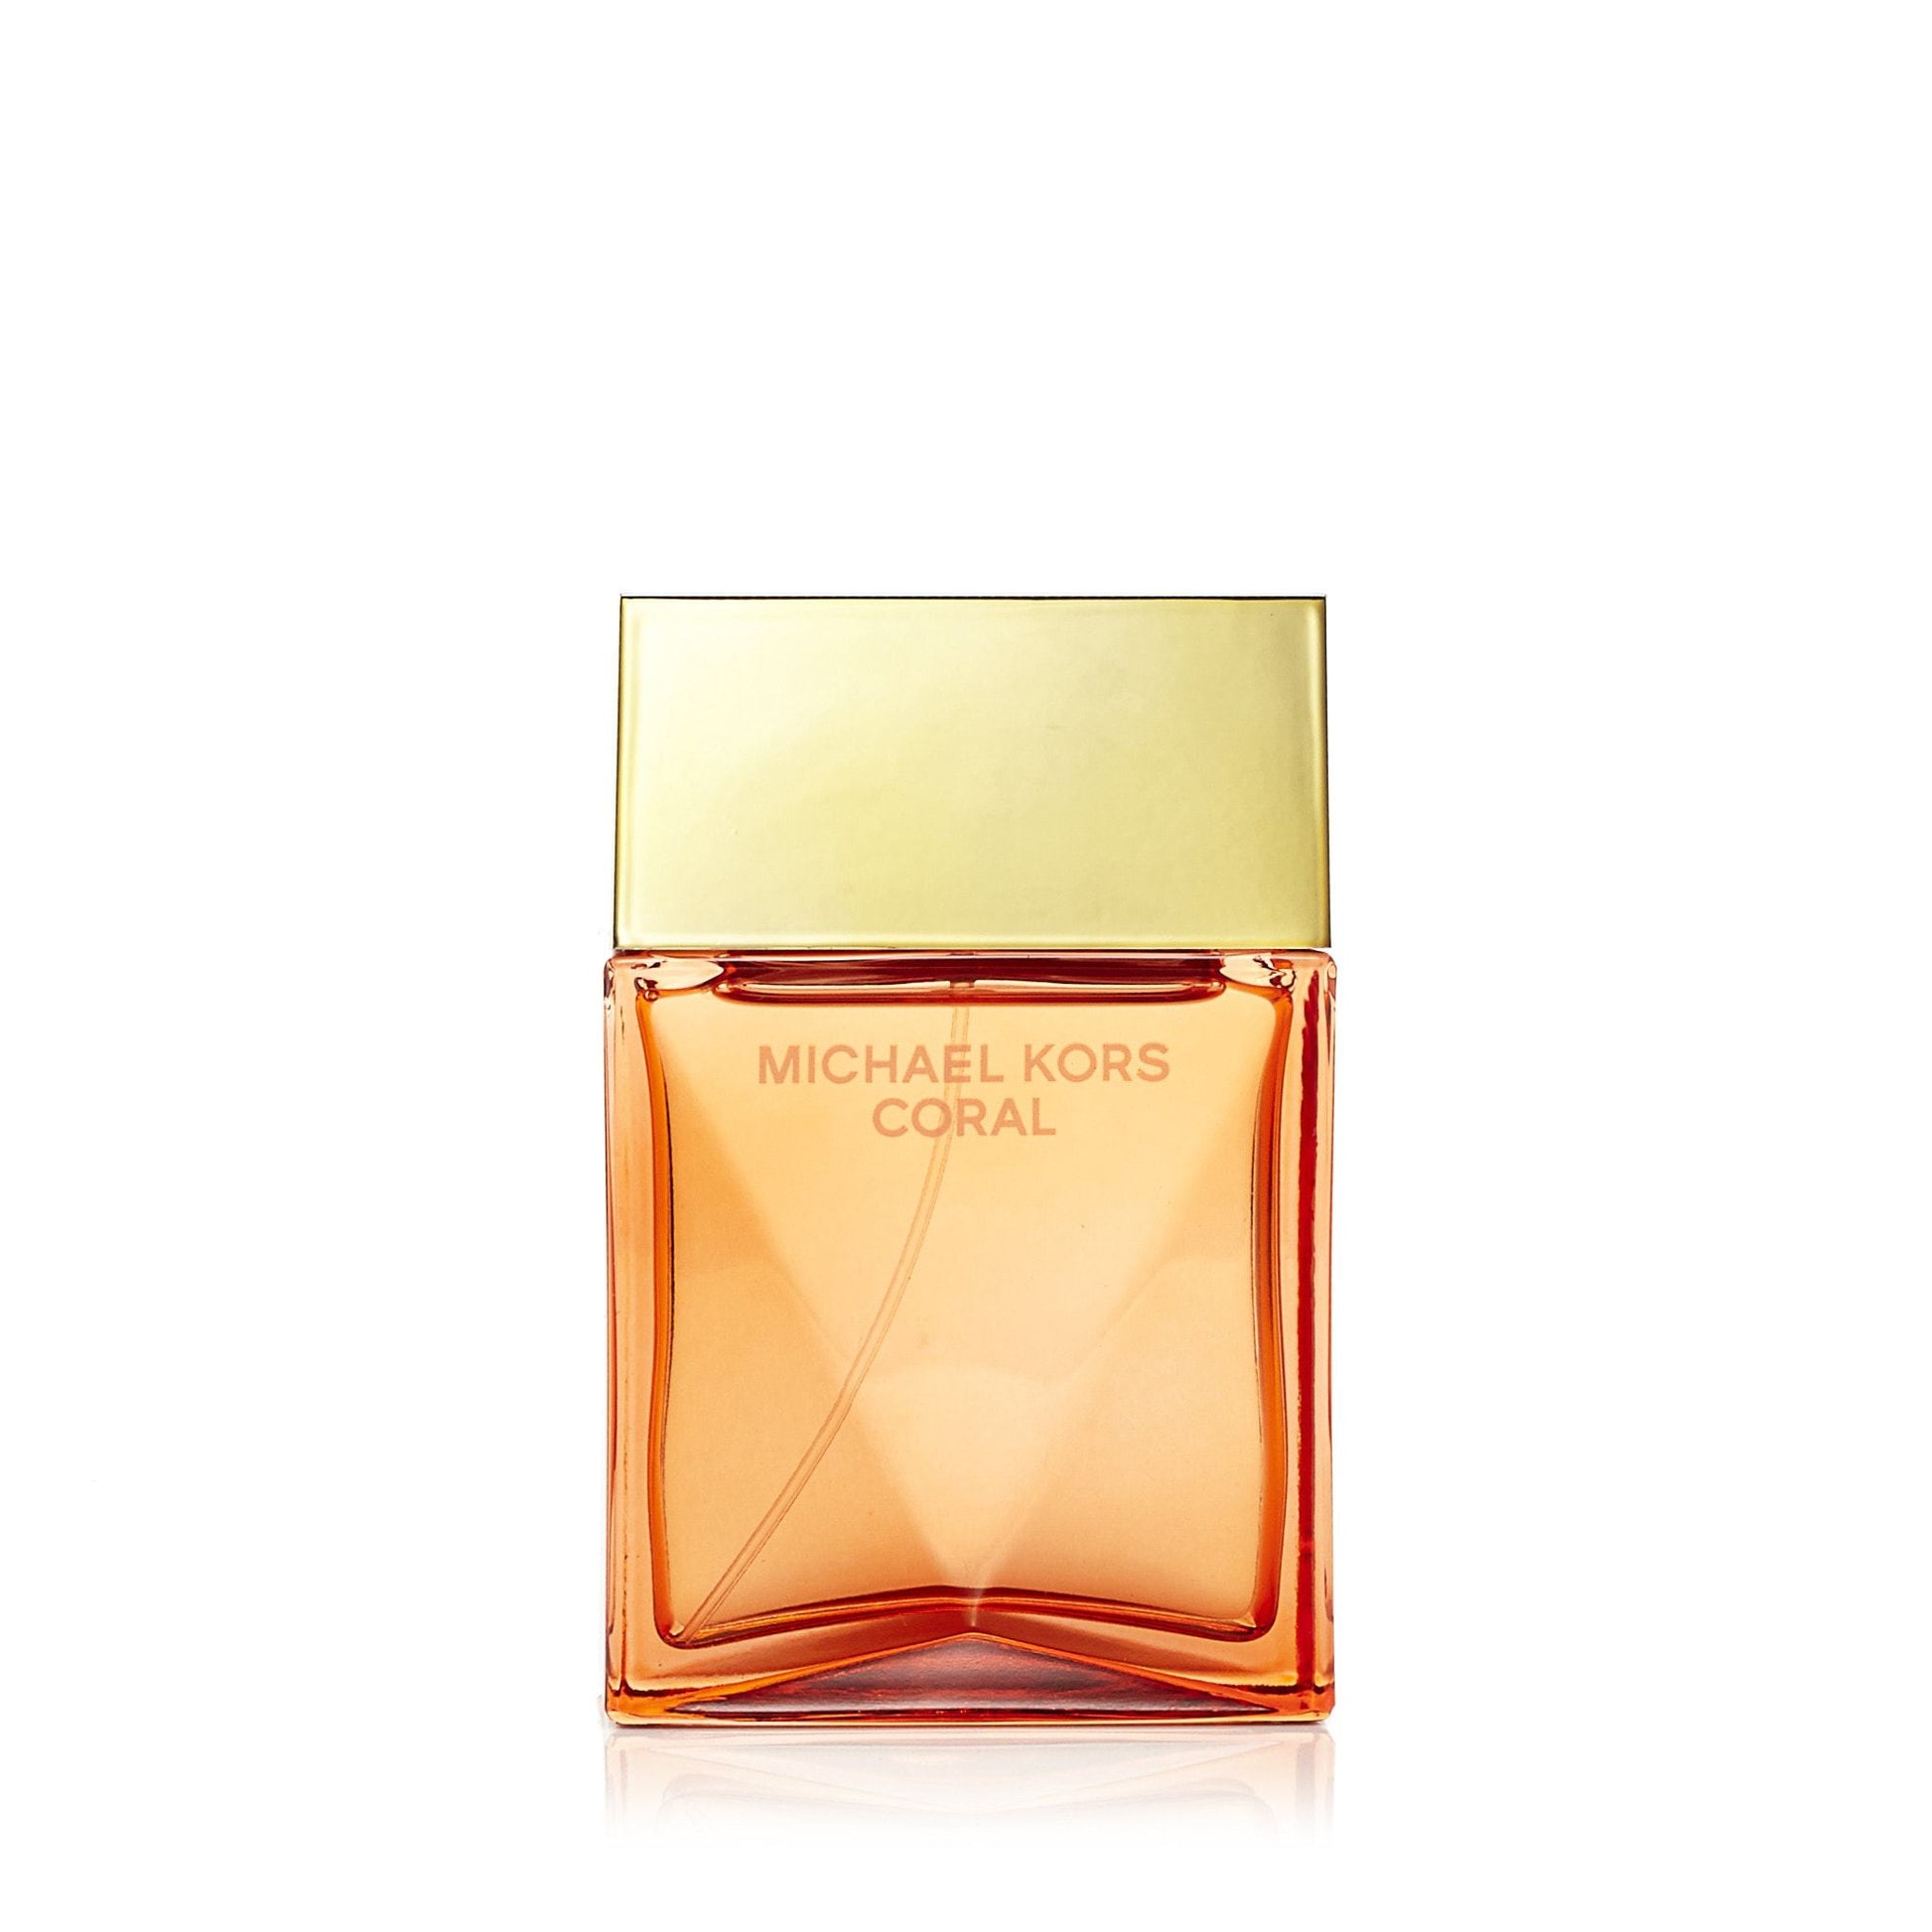 Coral Eau de Parfum Spray for Women by Michael Kors, Product image 1